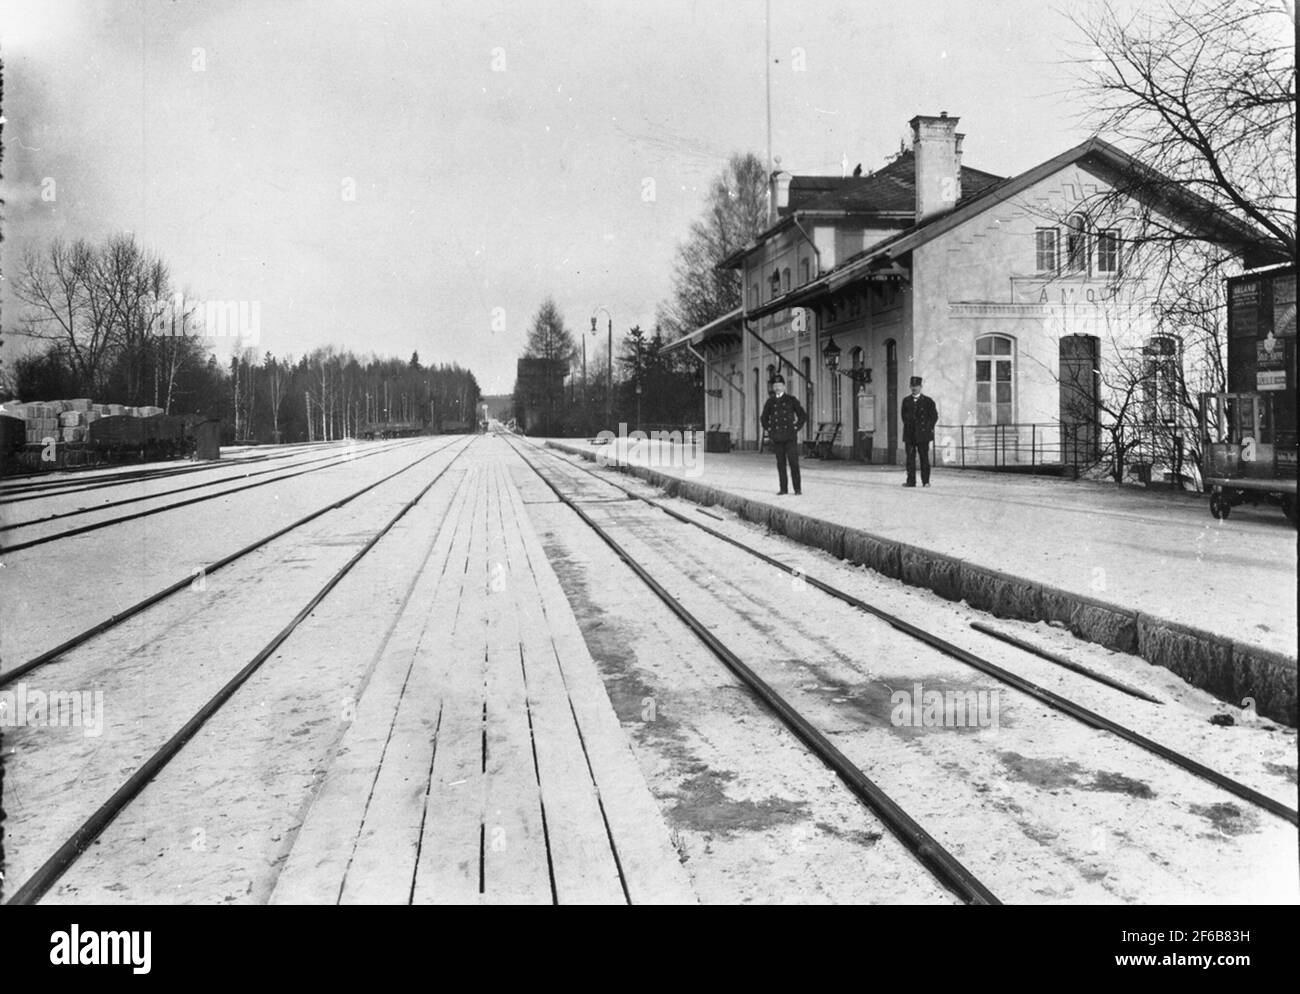 Der Bahnhof wurde 1867 eröffnet. Der Name war früher Åmot. Das zweistöckige Bahnhofsgebäude im Jahr brick,1917 änderte den Namen in Åmotors. Das Bahnhofshaus wurde 1944 modernisiert. Mechanisches Übersetzungsverhältnis. Stockfoto